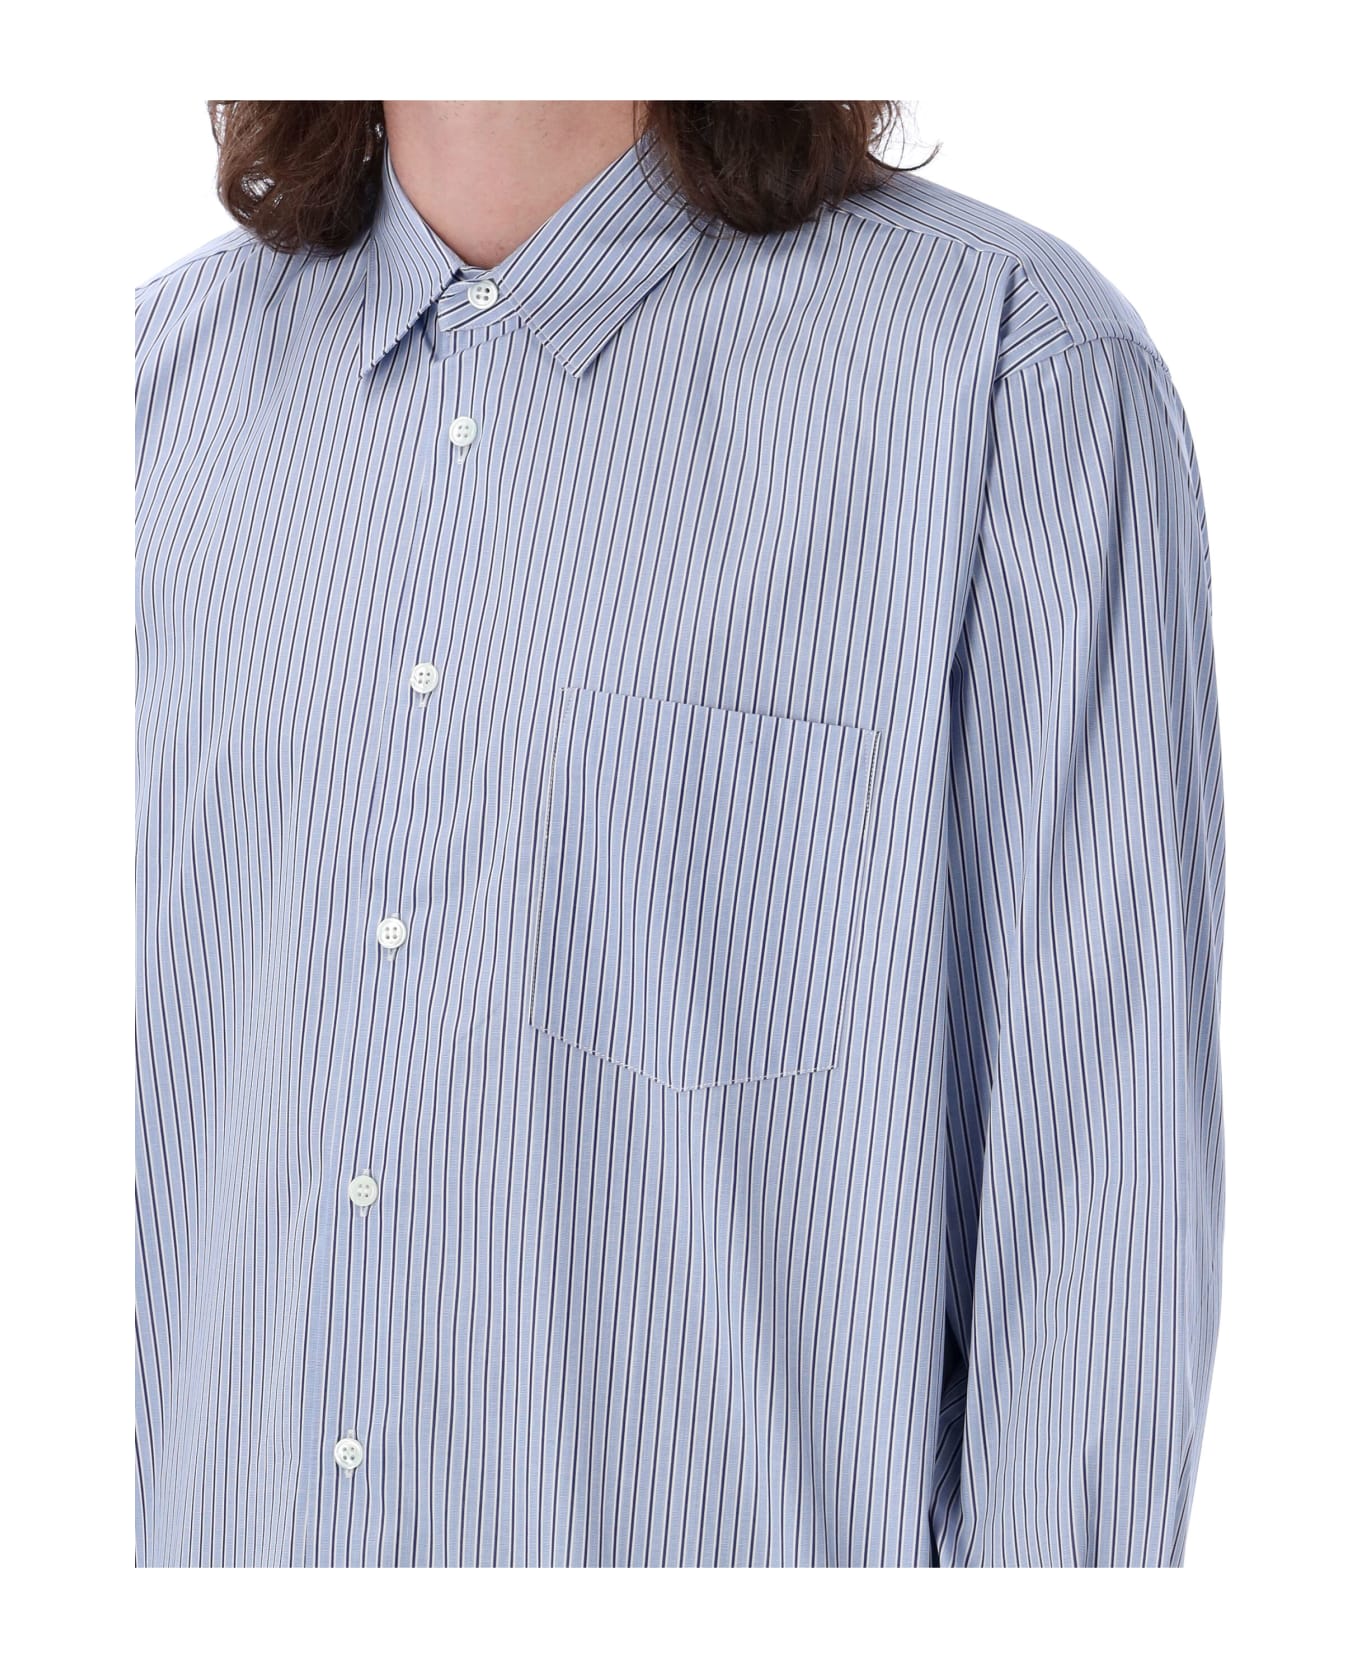 Comme des Garçons Shirt Stripes Shirt - LIGHT BLUE NAVY シャツ